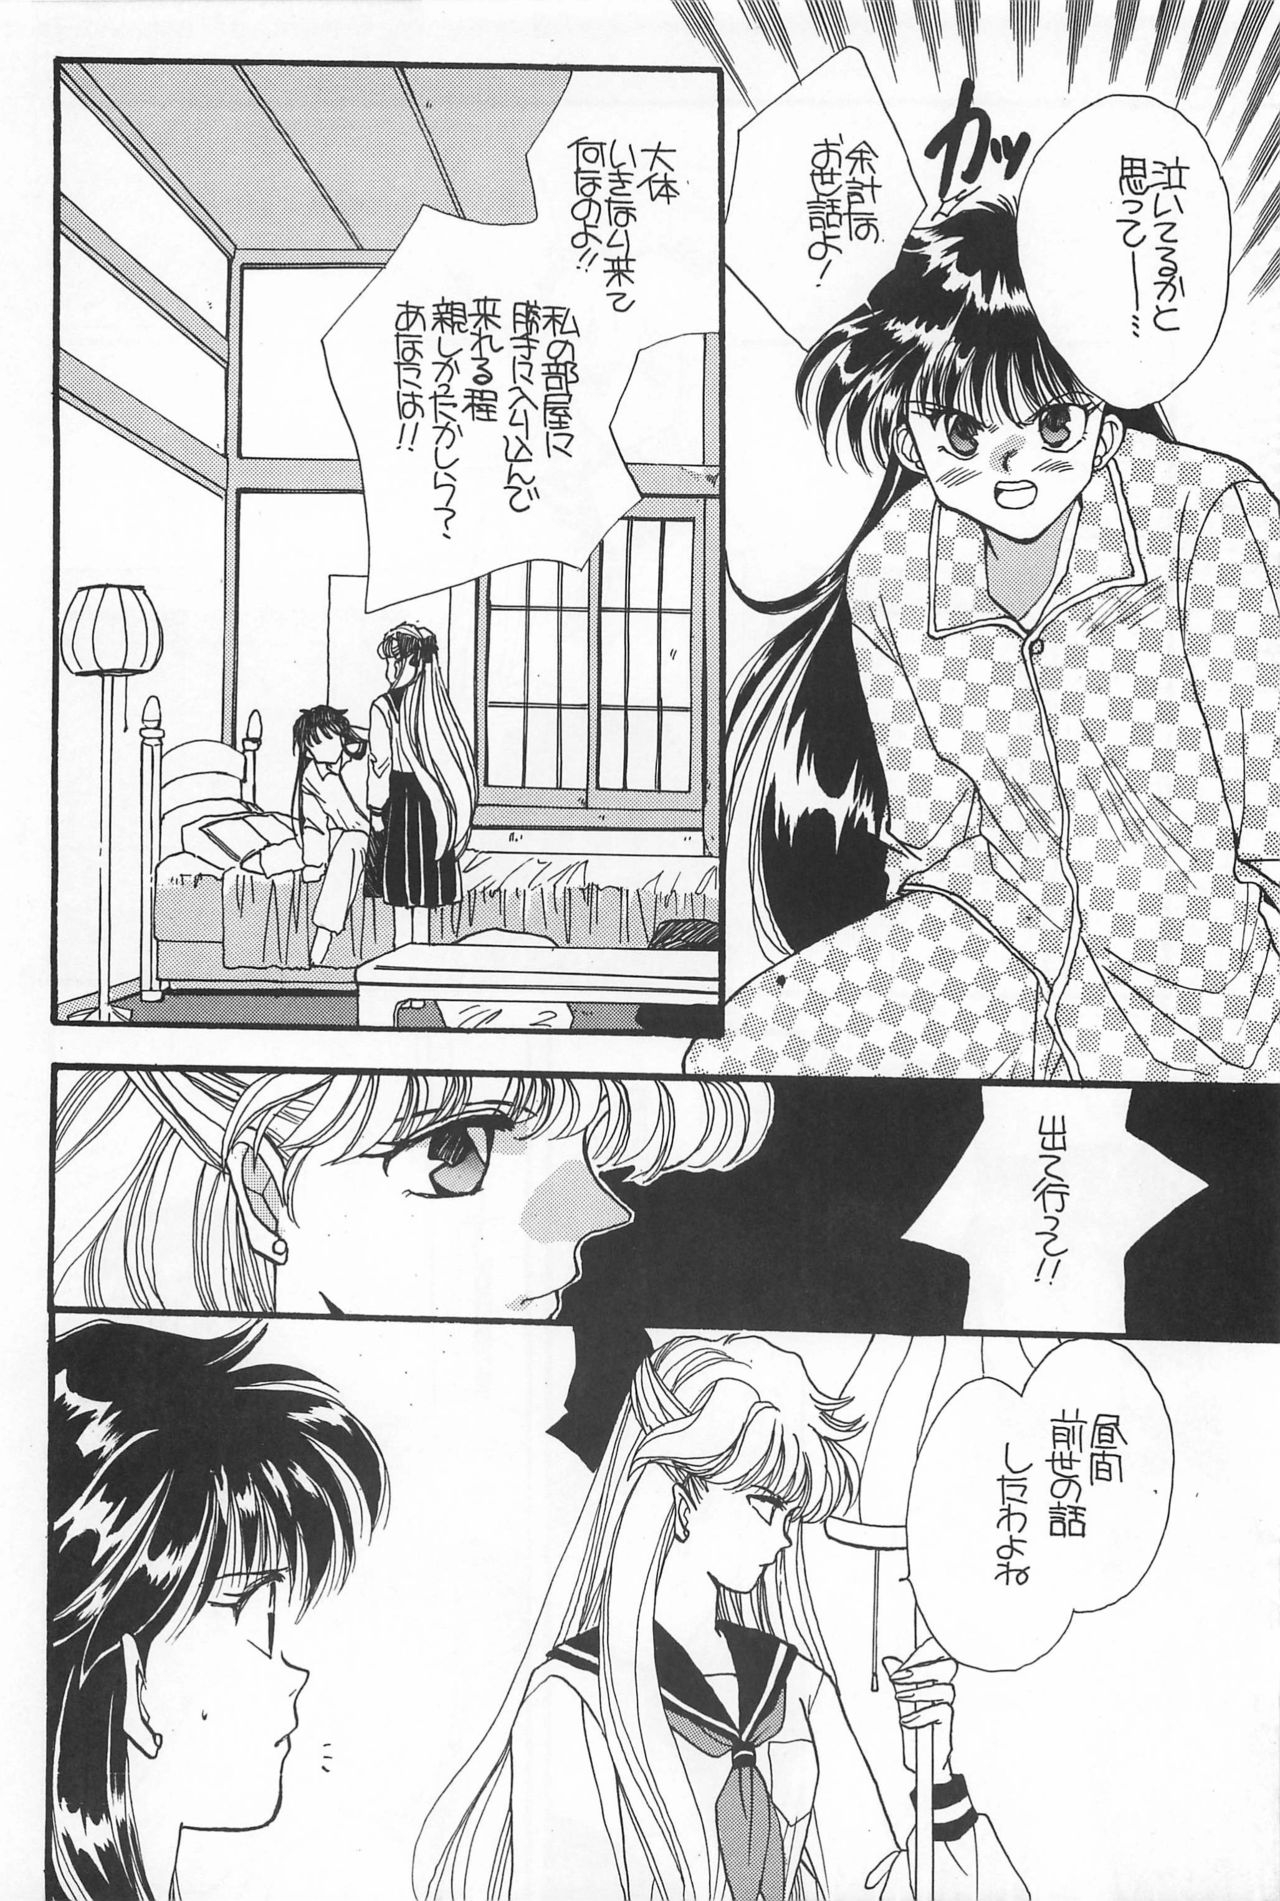 [Hello World (Muttri Moony)] Kaze no You ni Yume no You ni - Sailor Moon Collection (Sailor Moon) 125